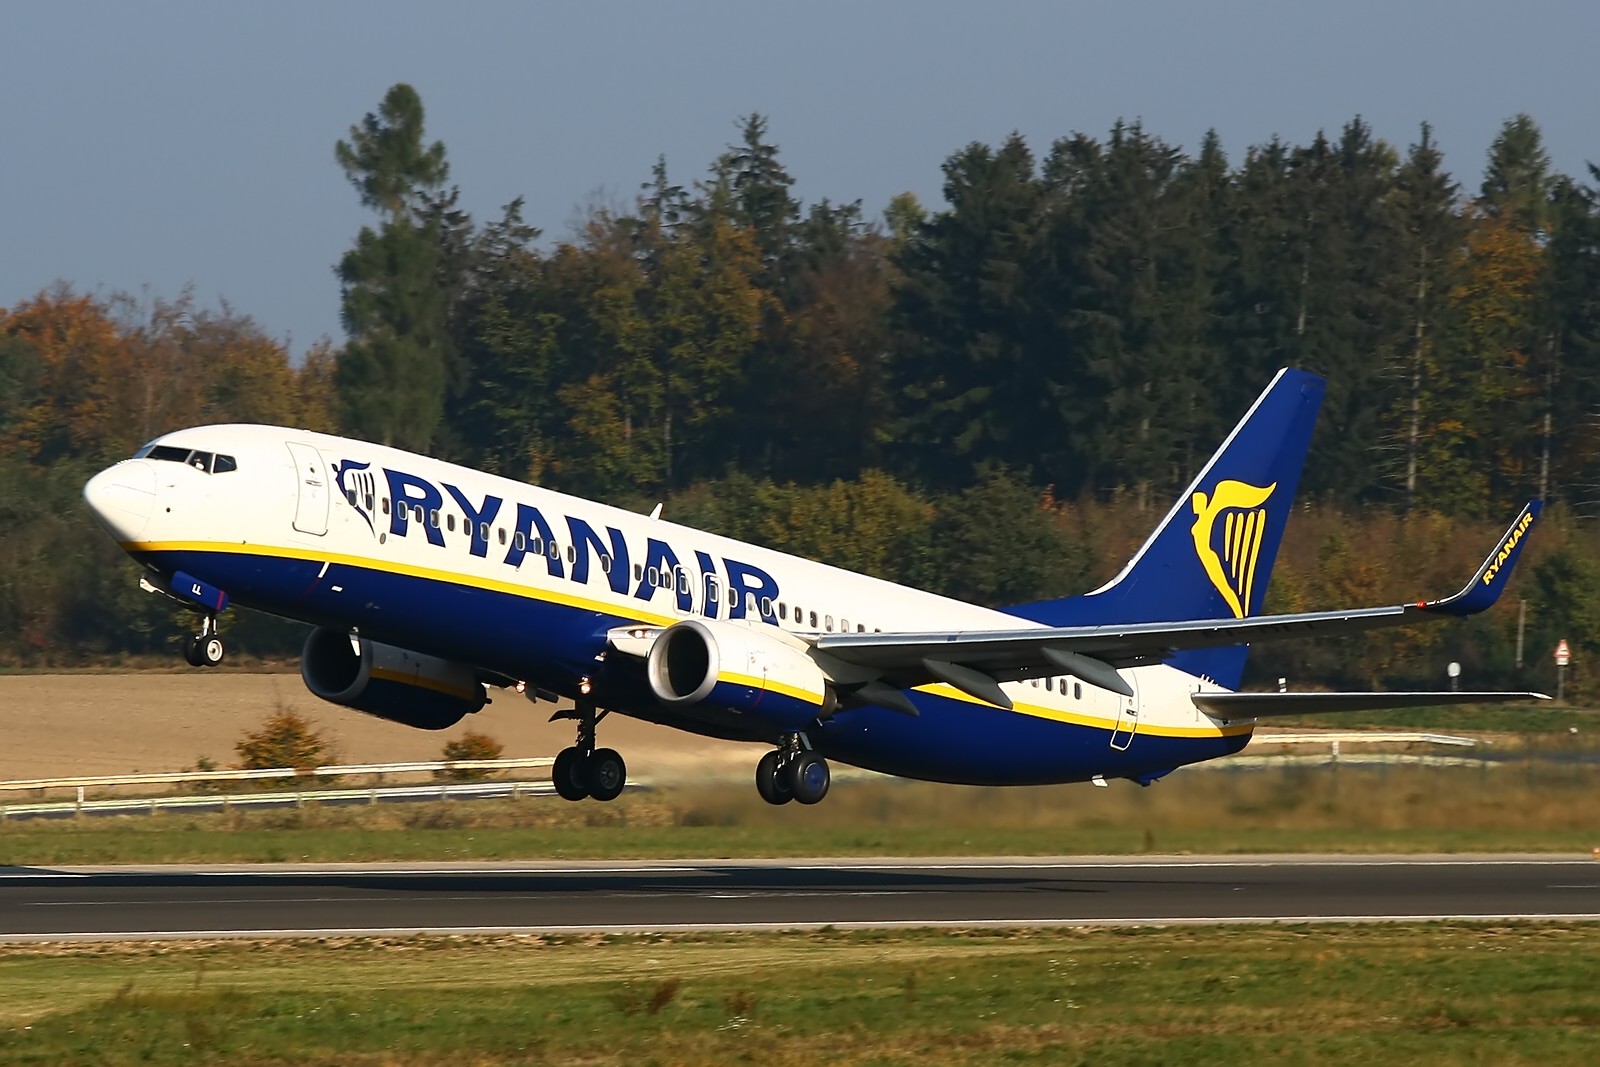 H Ryanair Χαιρετιζει Το Πλανο Του Σετε Για Την Αναδειξη Της Ελλαδος Ως Νουμερο 1 Τουριστικου Προορισμου Παγκοσμιως Και Προτιθεται Να Διπλασιασει Την Επιβατικη Της Κινηση